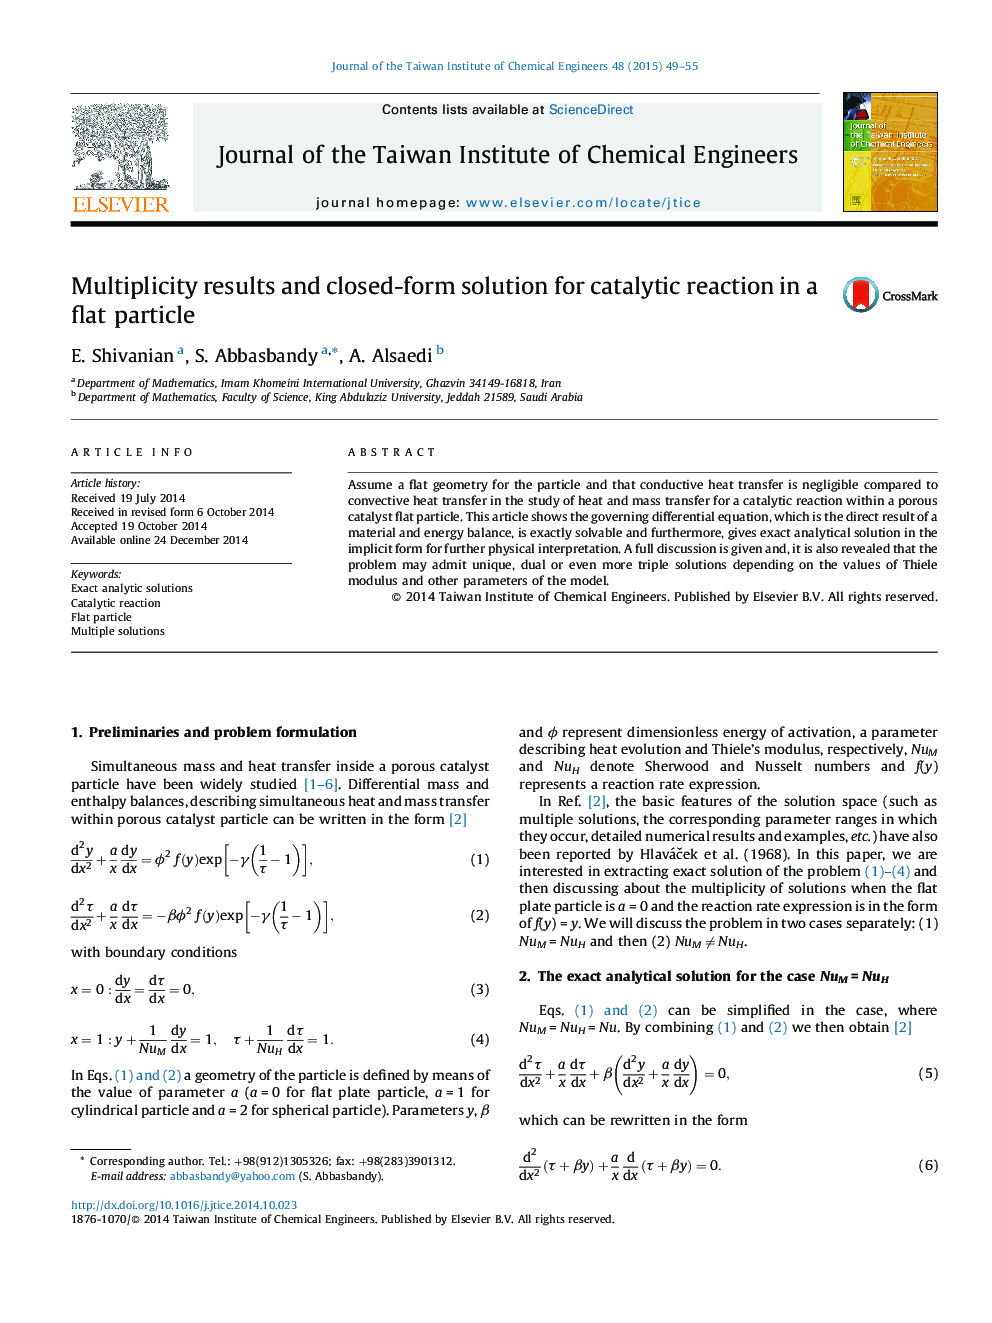 نتایج چندگانه و راه حل بستر فرم واکنش کاتالیزوری در یک ذره مسطح 